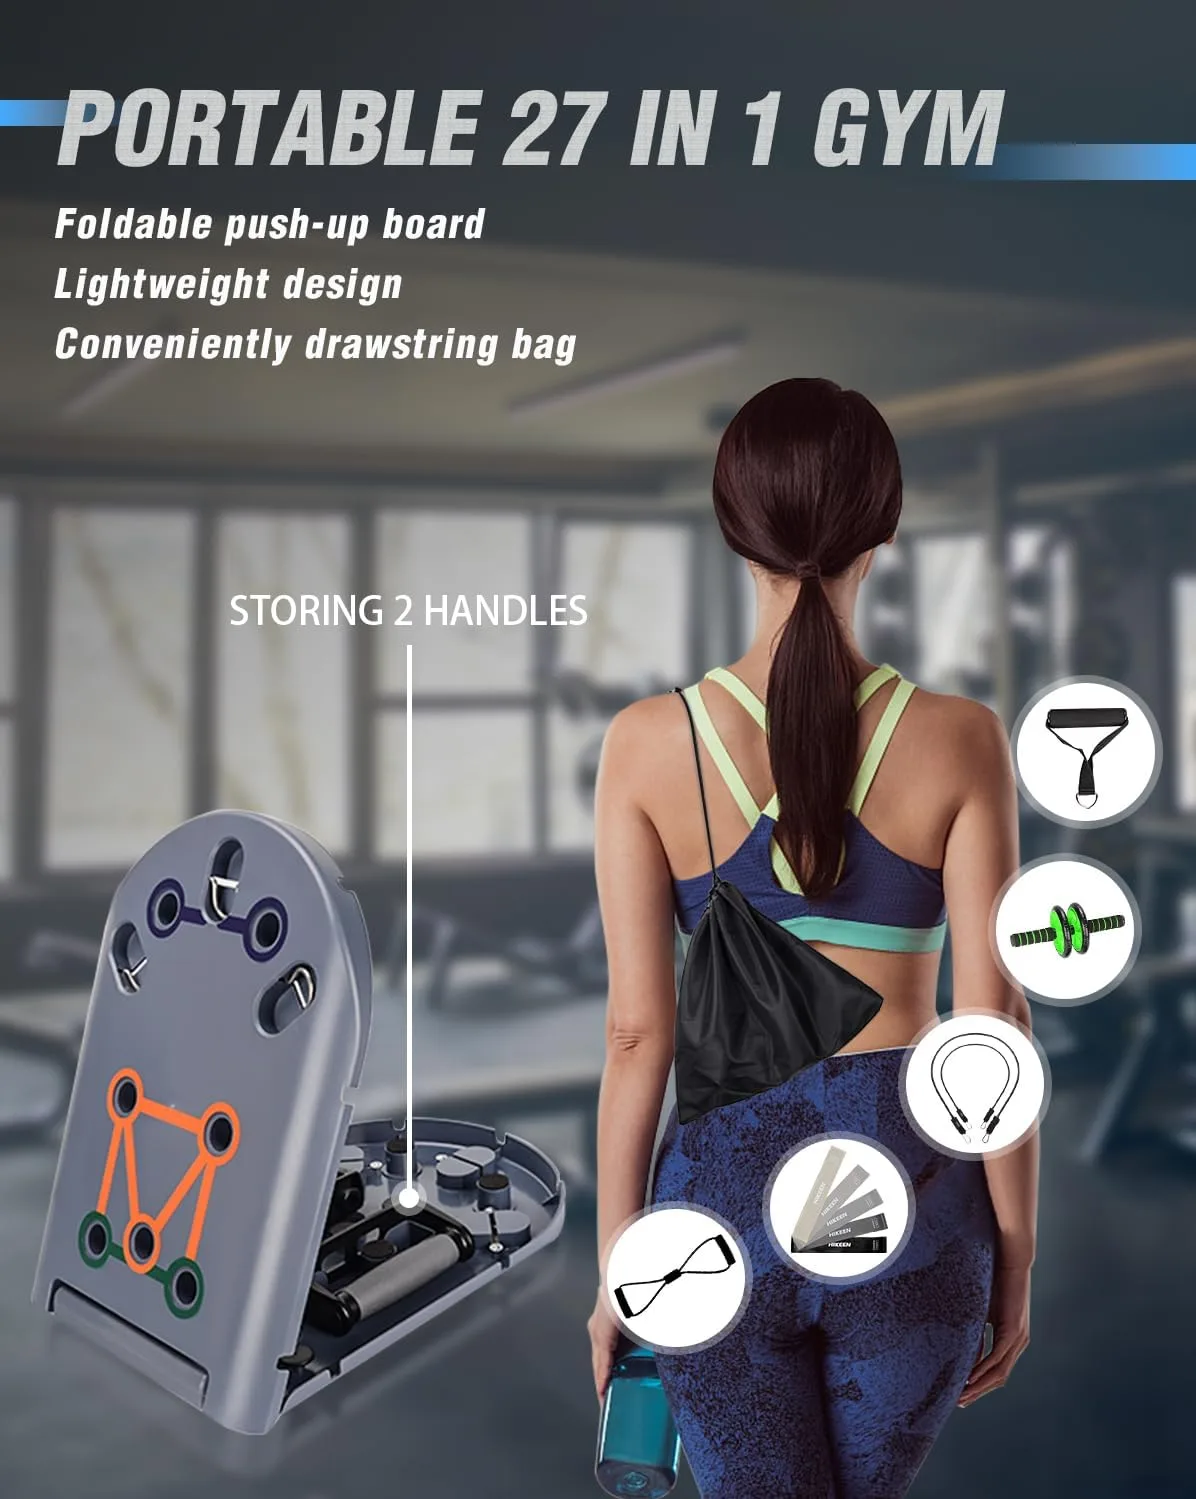 hikeen home workout equipment review jpg